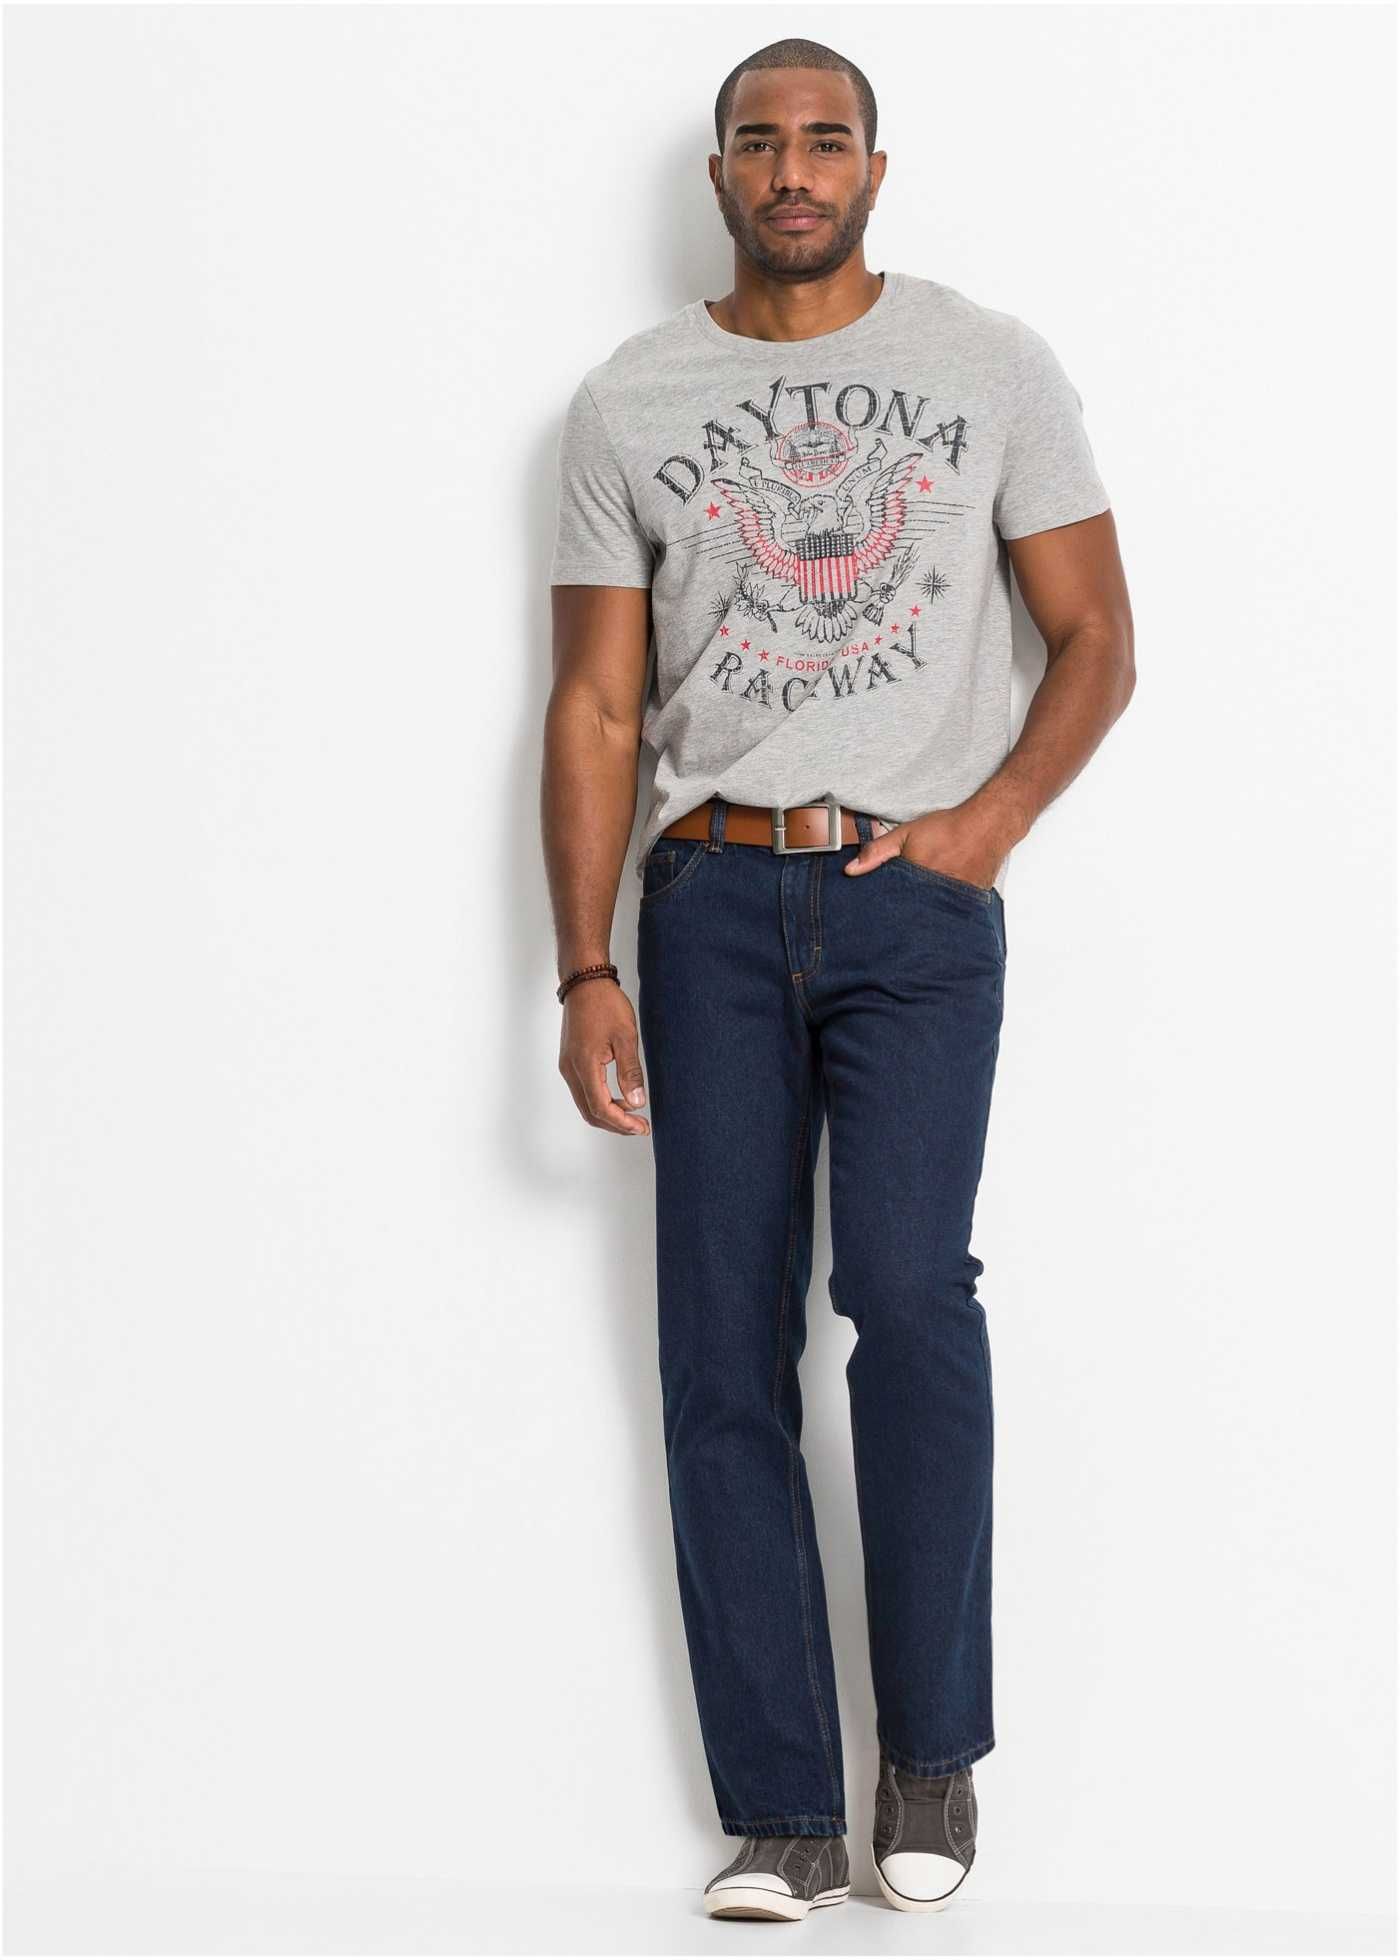 Spodnie męskie jeans Bawełna marki J Baner Rozmiar 52